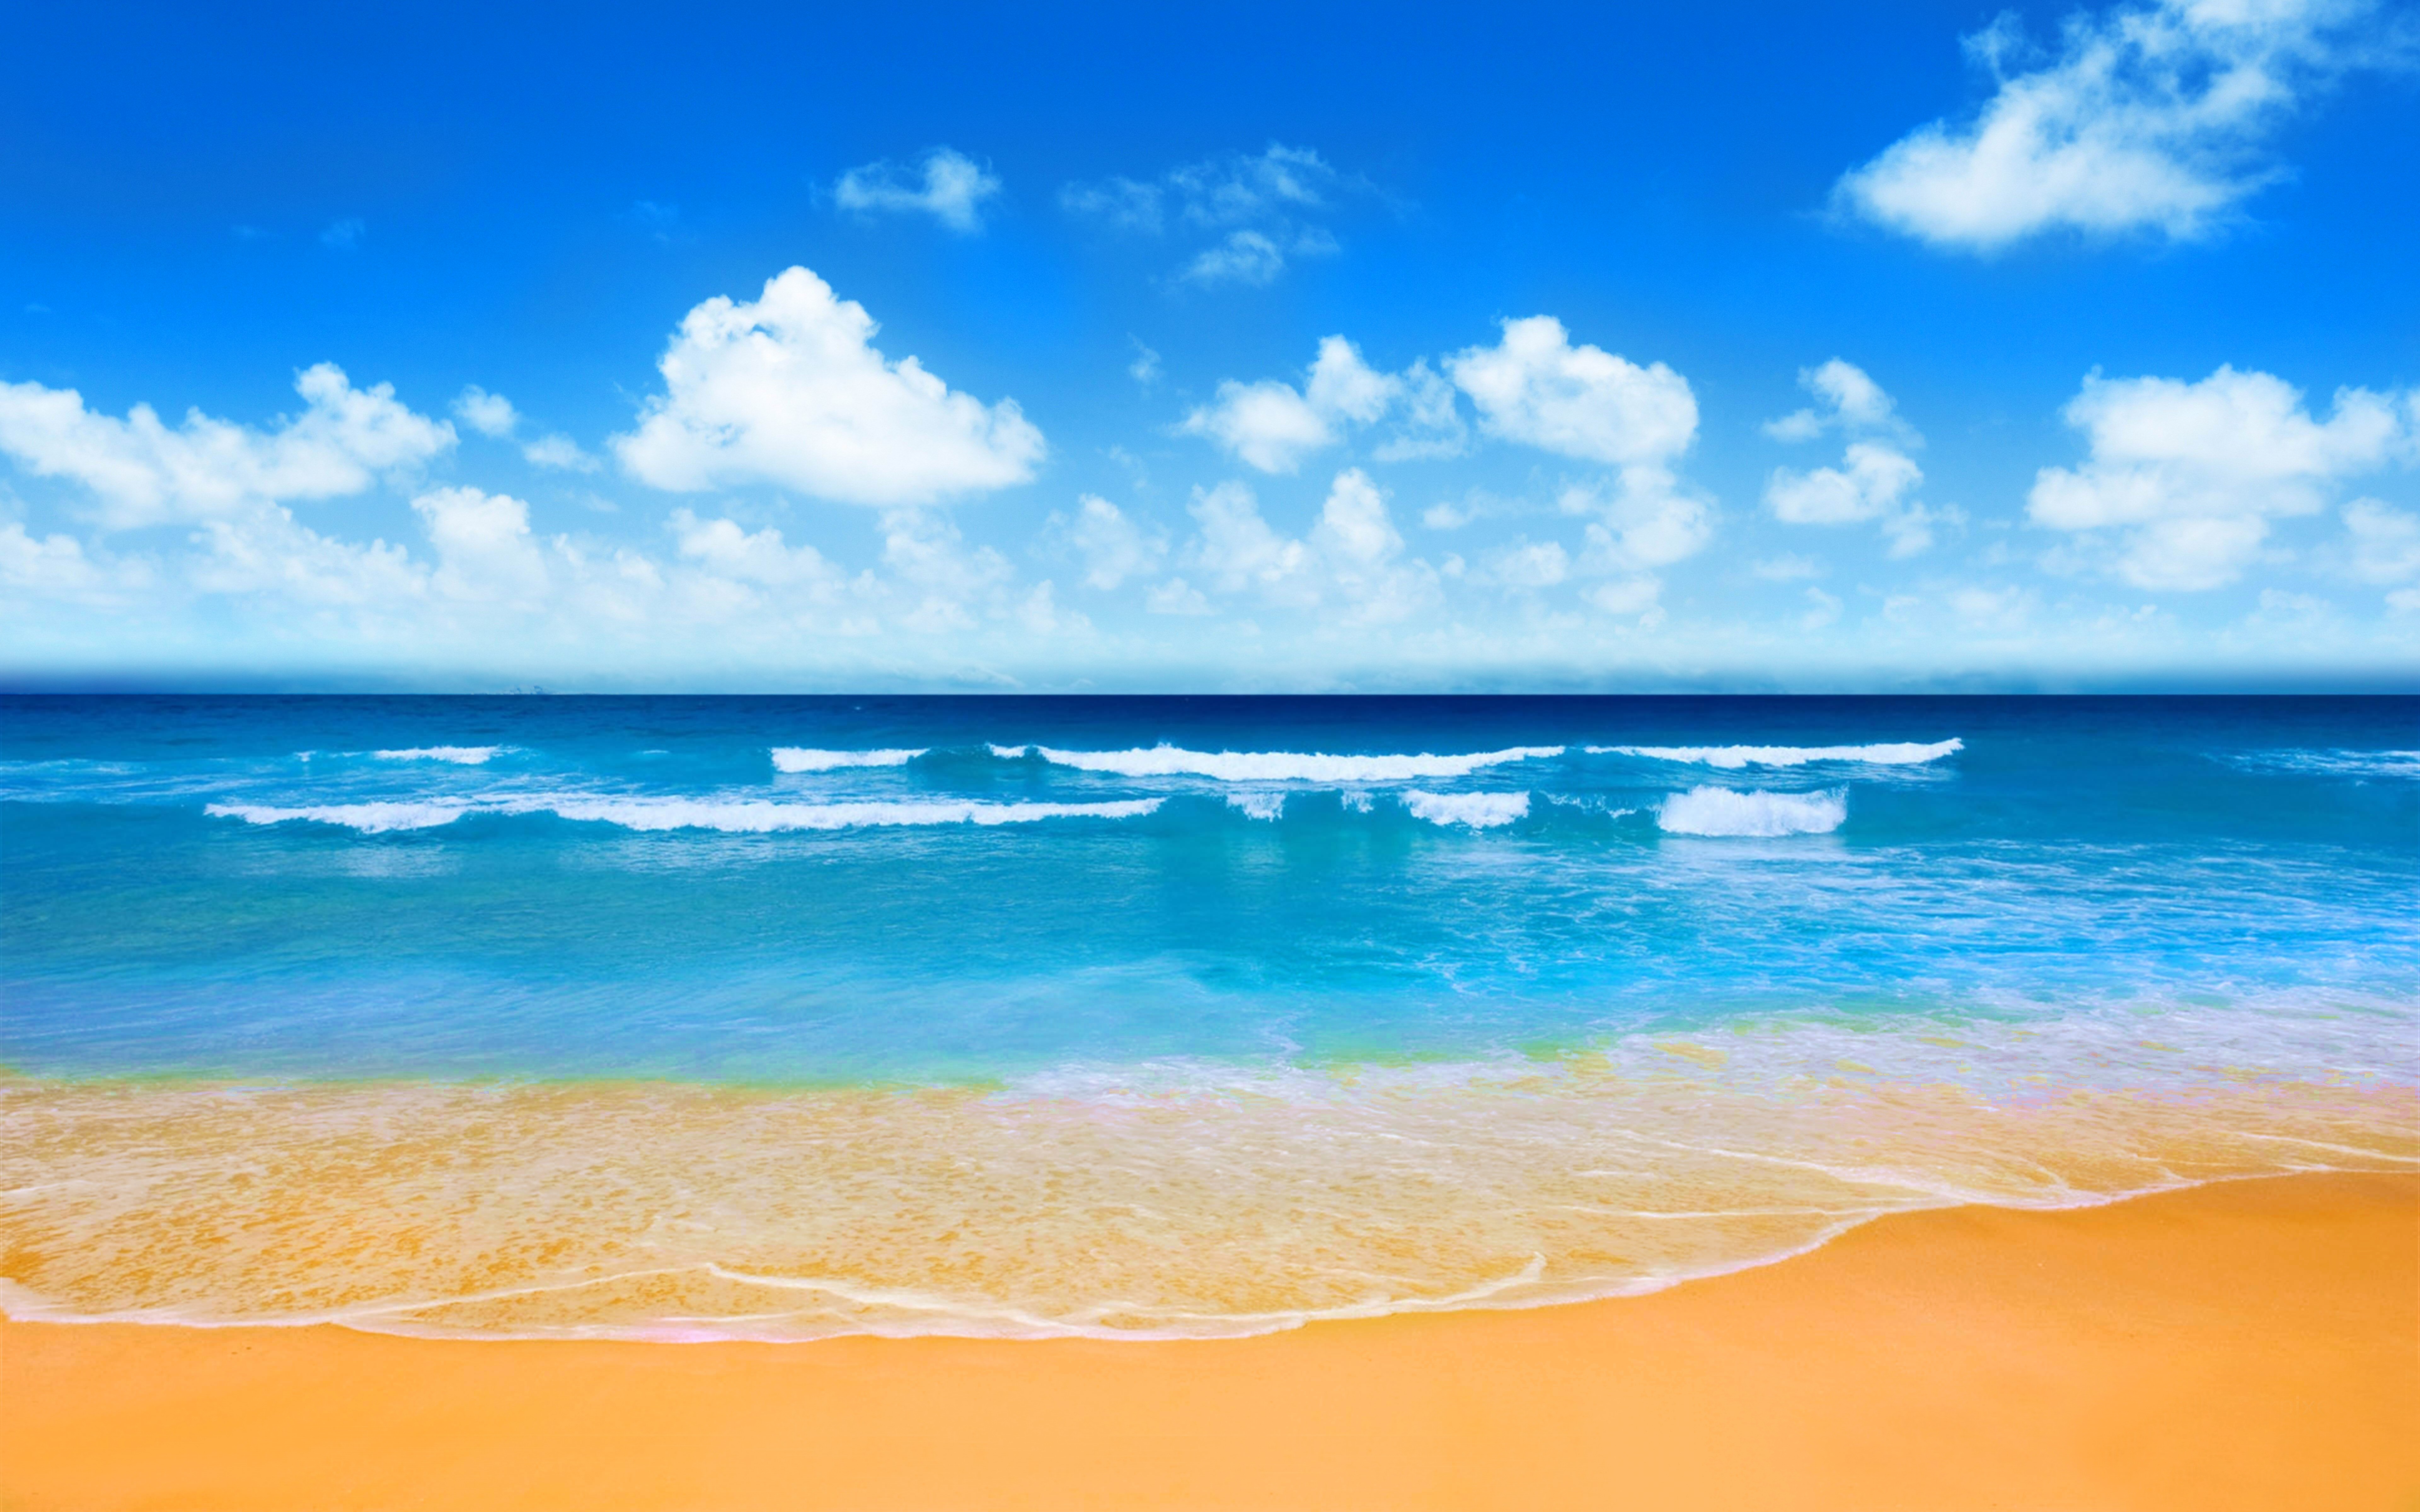 Với hình ảnh bãi biển đầy màu sắc và hấp dẫn này, chắc chắn sẽ khiến bạn muốn đặt chân đến ngay bãi biển gần nhất. Đắm mình trong nắng vàng và bầu trời xanh trong lành, và cảm nhận được sự thanh thản tuyệt vời.